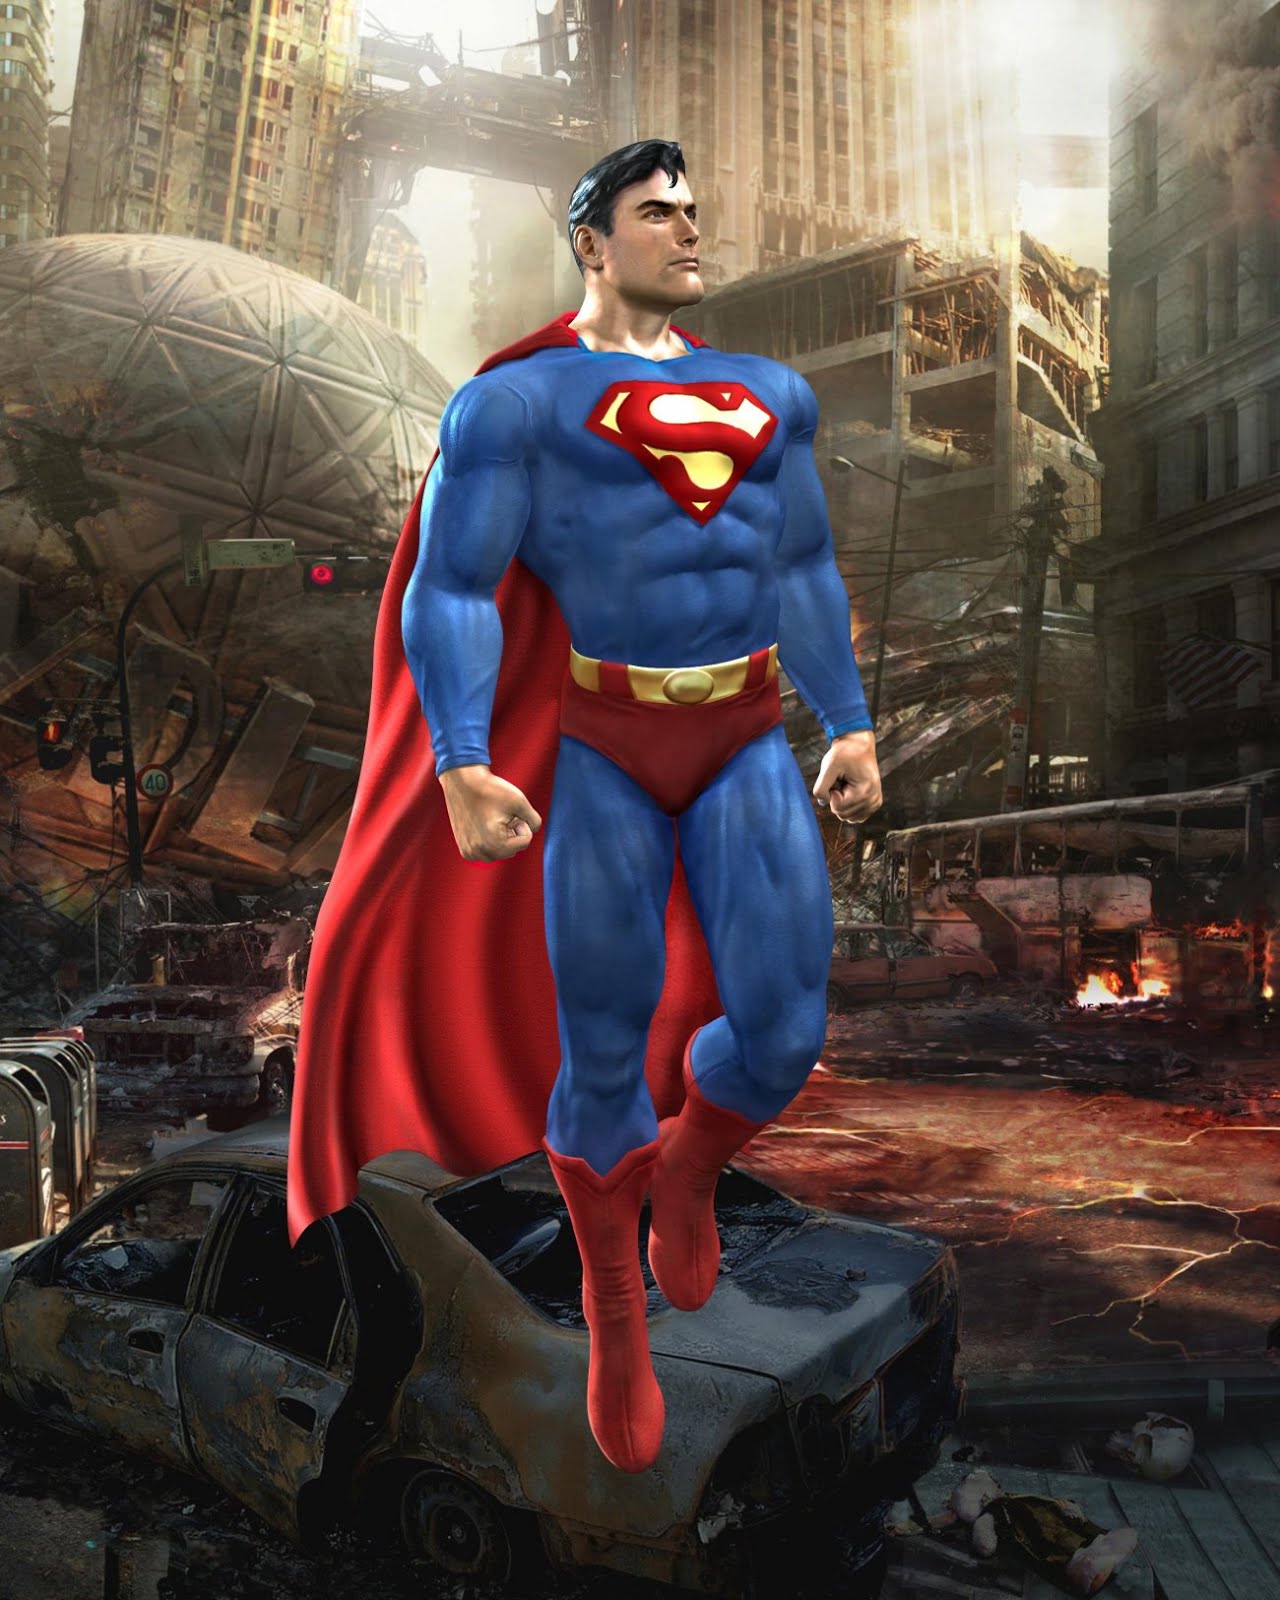 superhelden wallpaper hd,übermensch,superheld,erfundener charakter,held,action figur